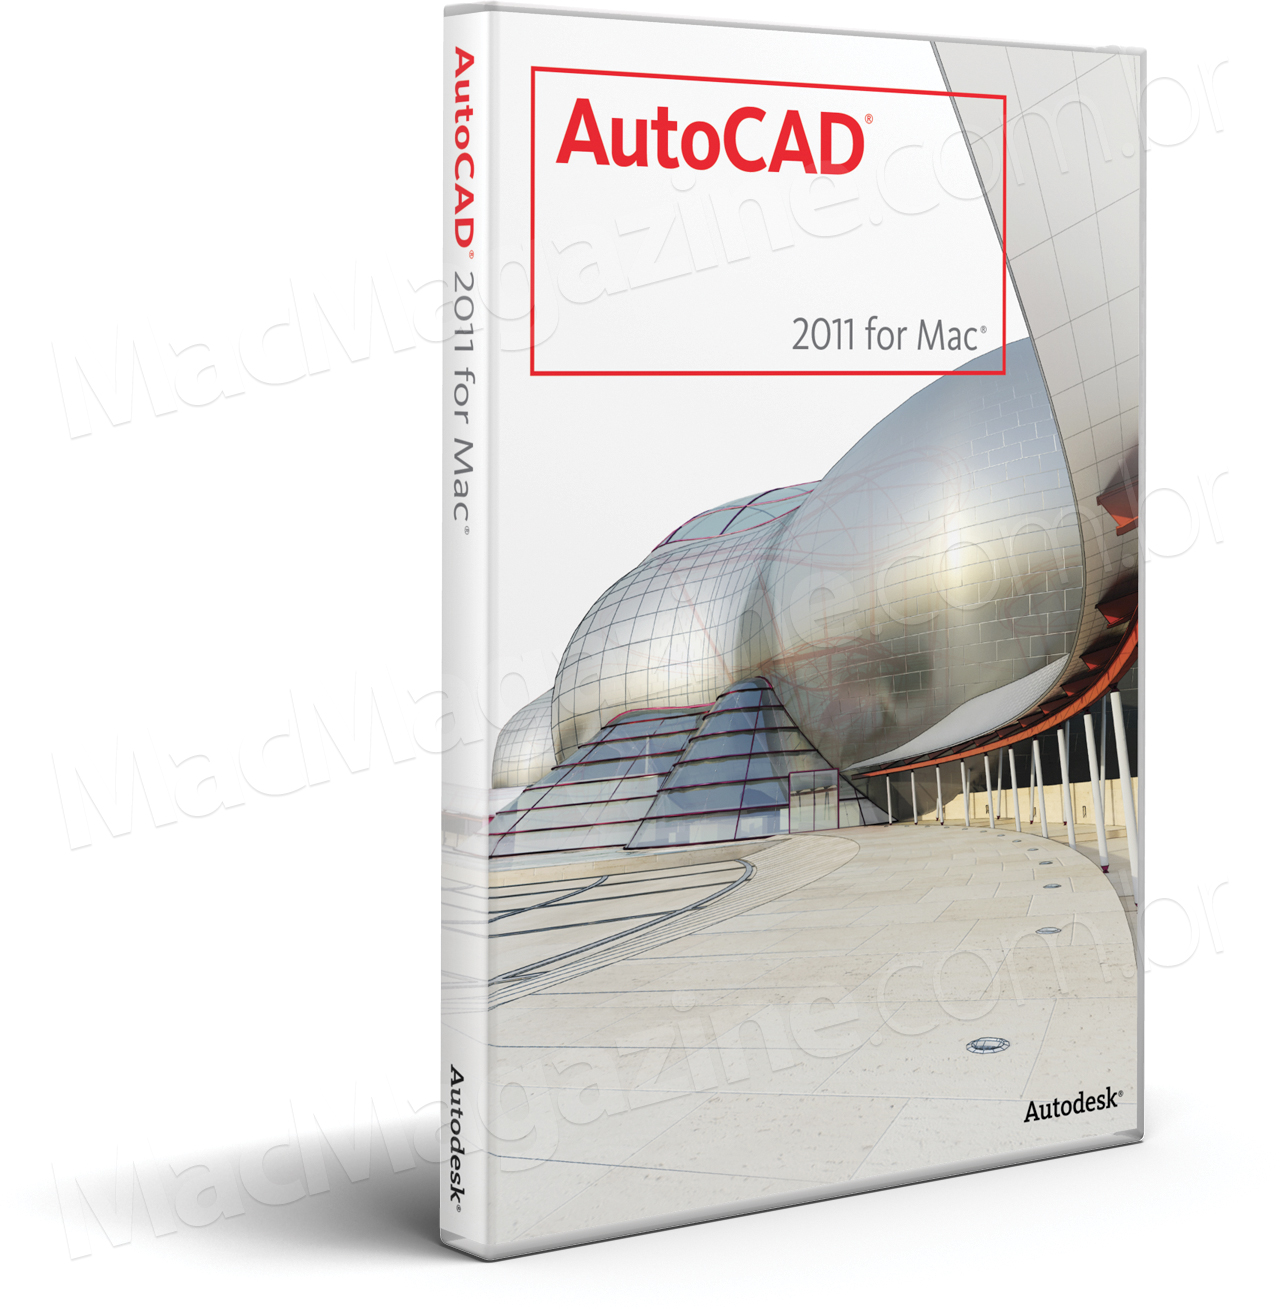 Caixa do AutoCAD 2011 para Mac